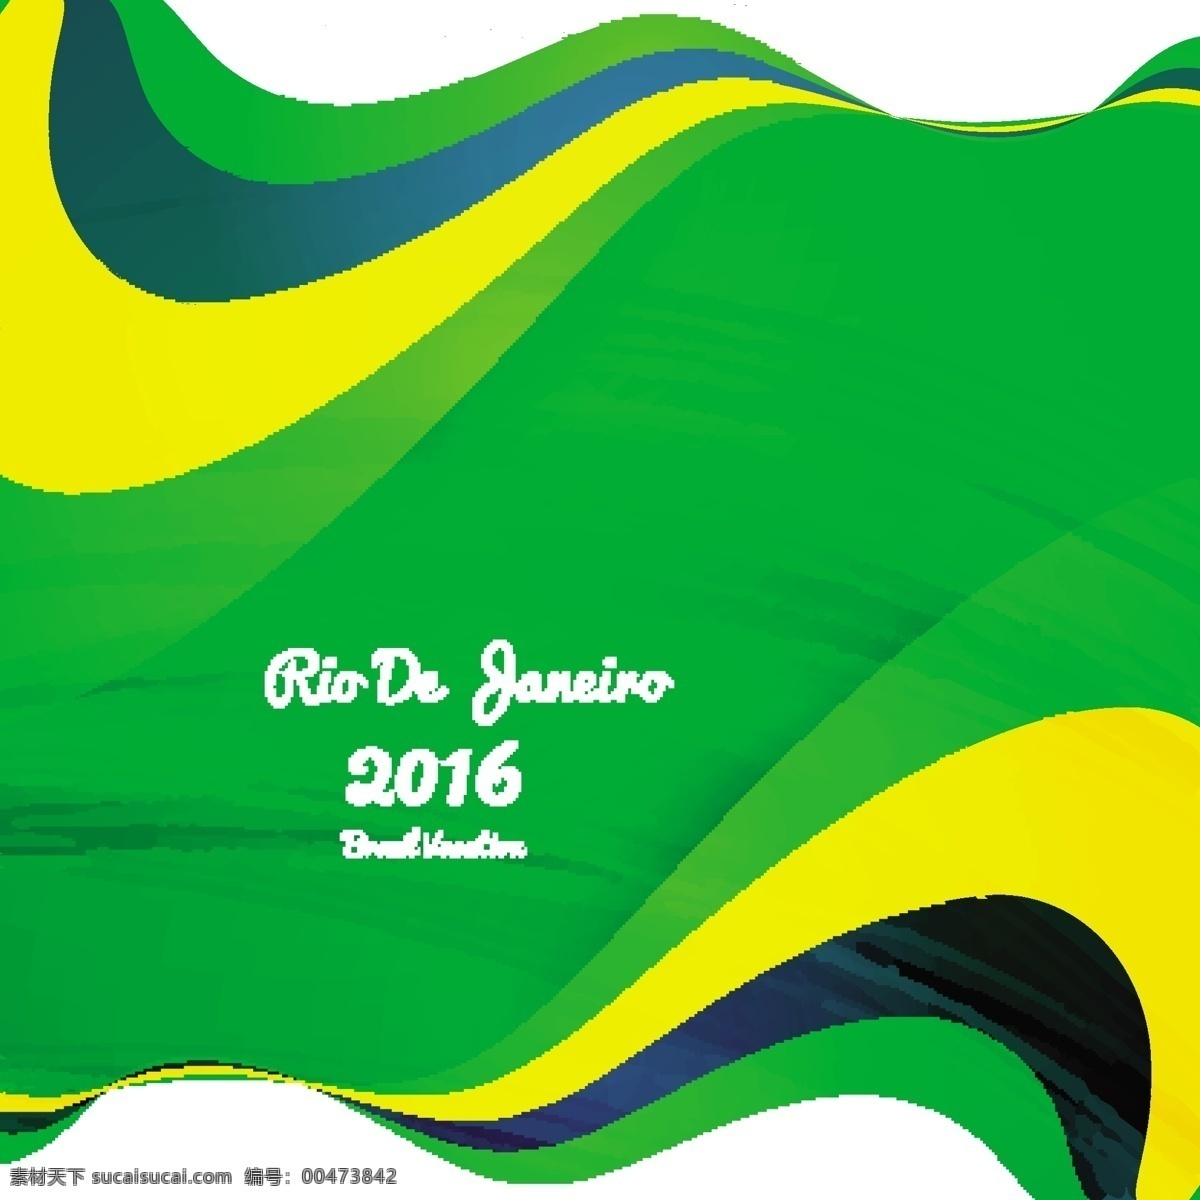 巴西 色彩 波浪 背景 抽象 风格 摘要 夏季 体育 健身 健康 壁纸 活动 七彩 2016 装饰 现代 运动 训练 游戏